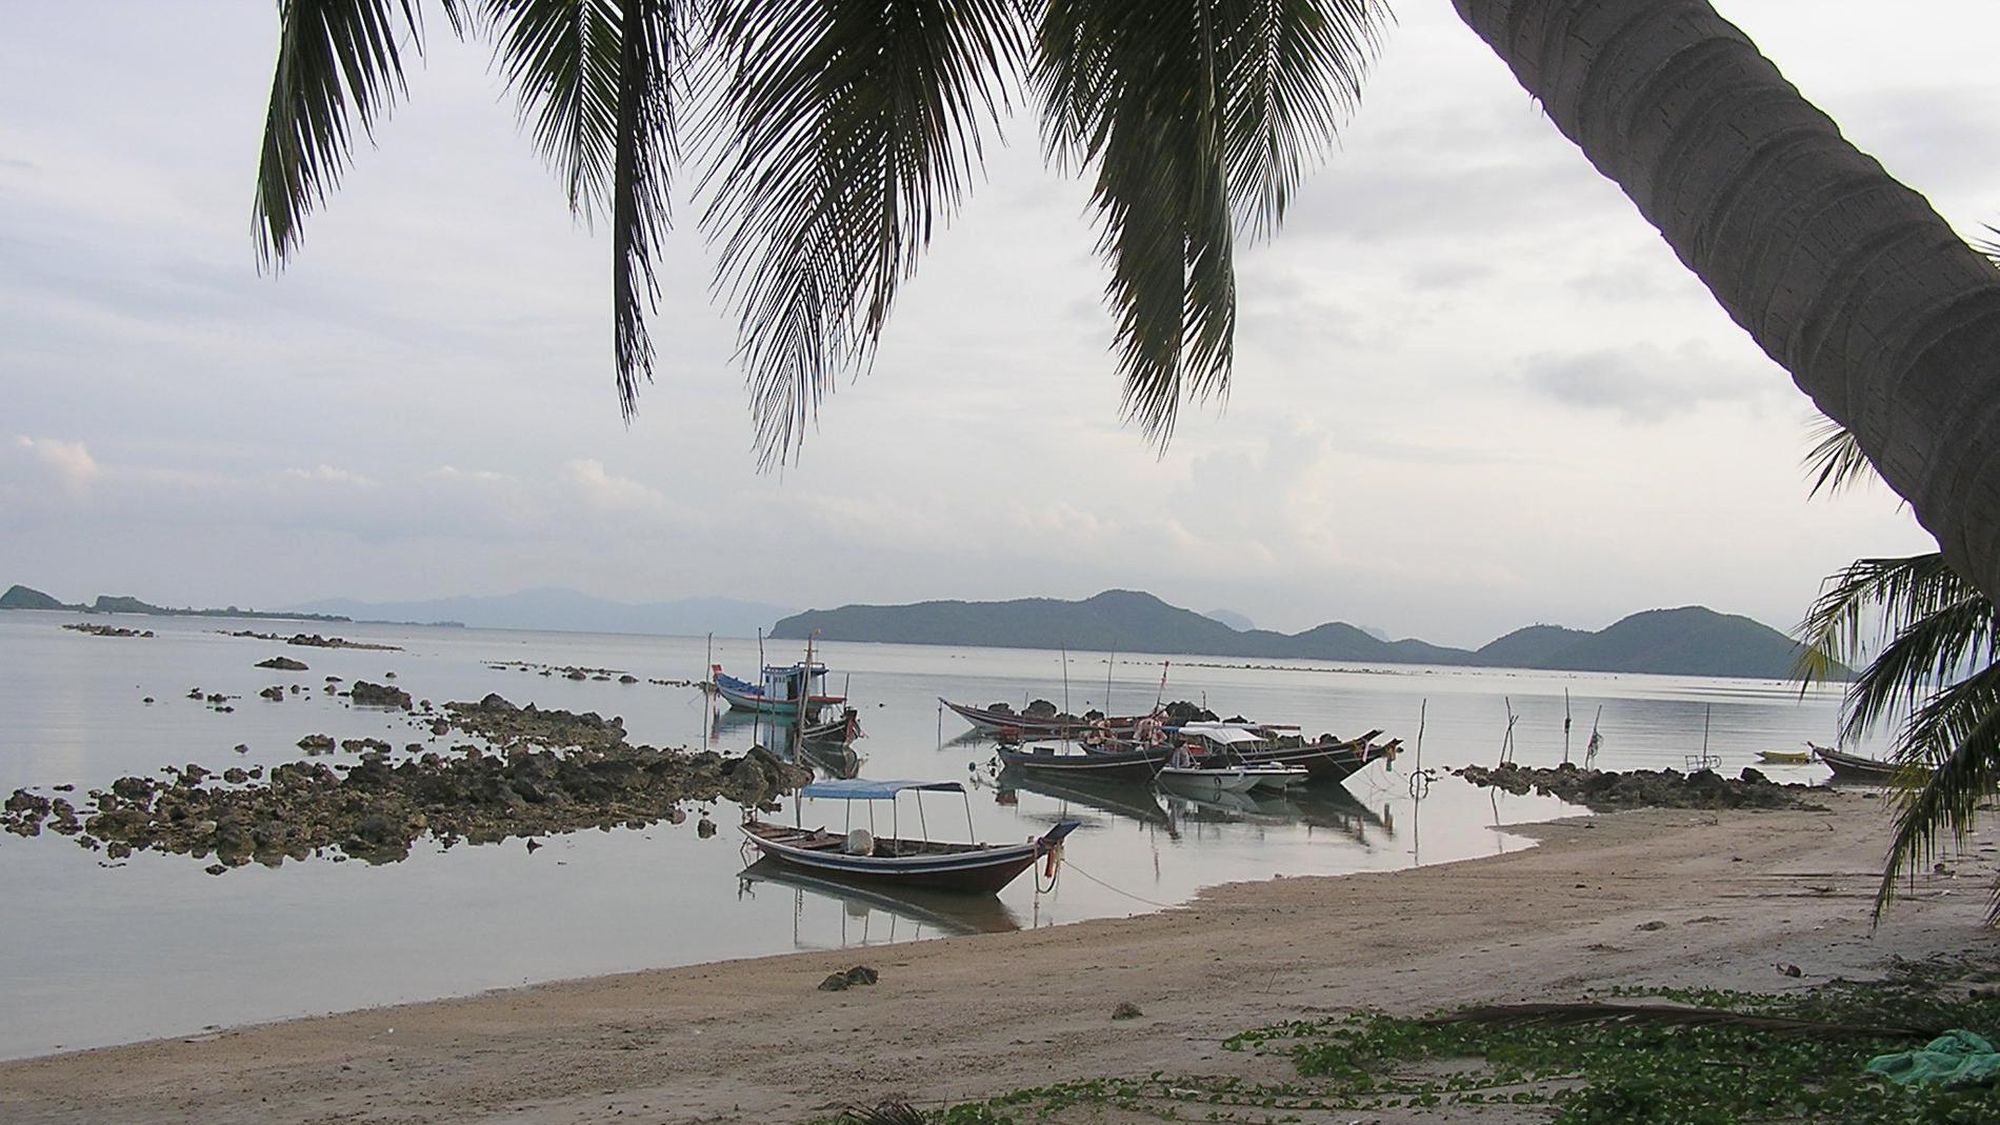 Beach boats and coconut tree.